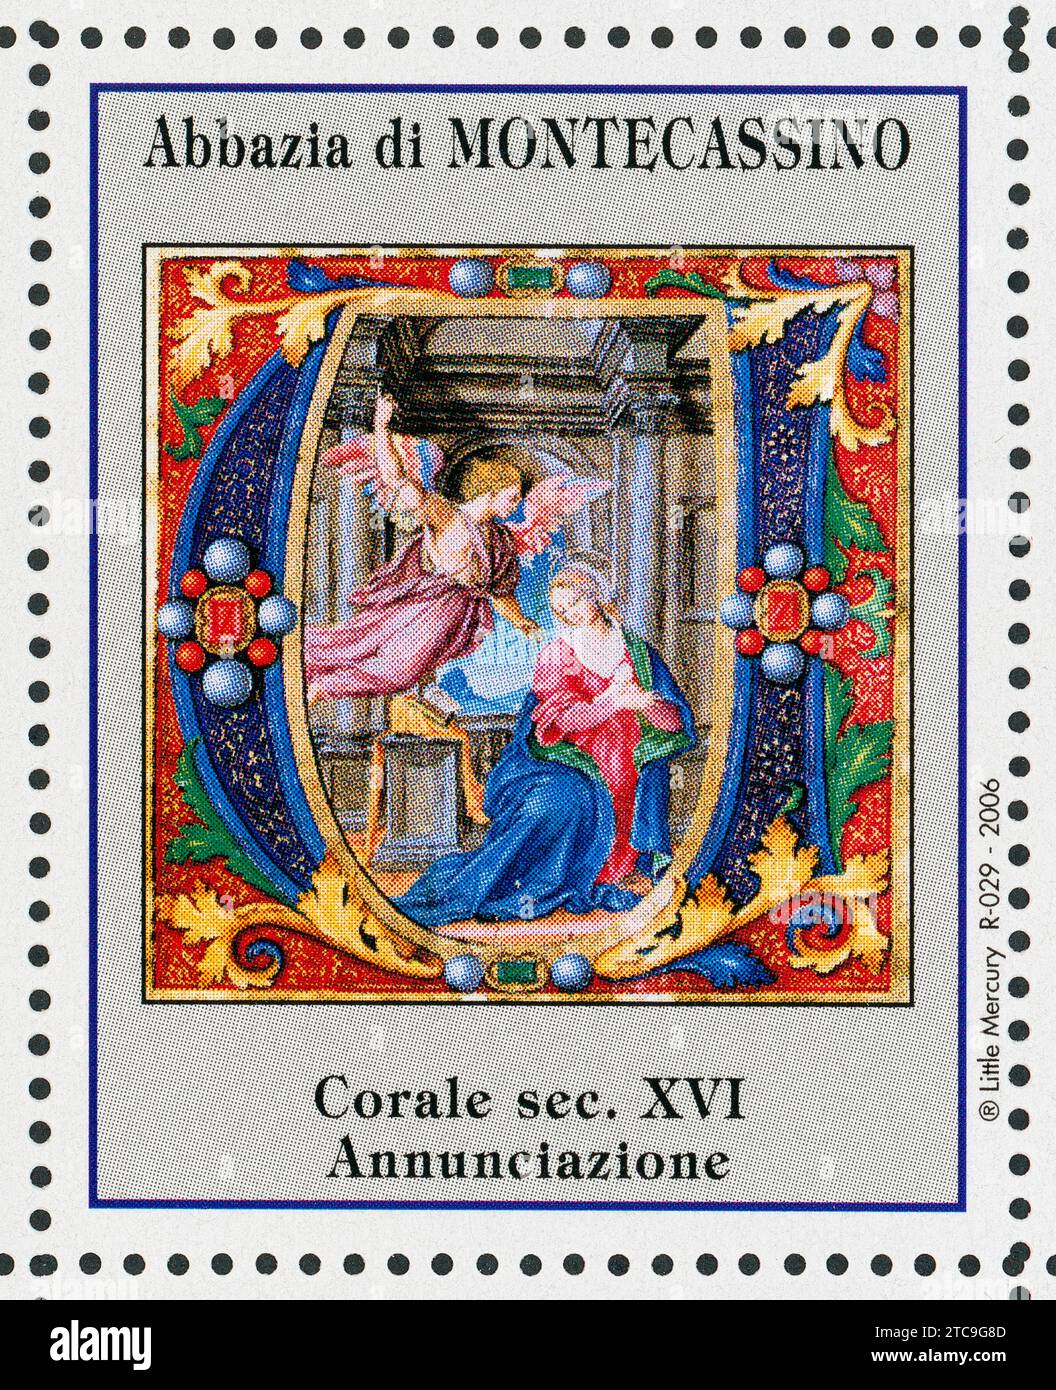 L'Annunciazione. Francobolli abbazia di Montecassino. coro del xvi secolo. Foto Stock